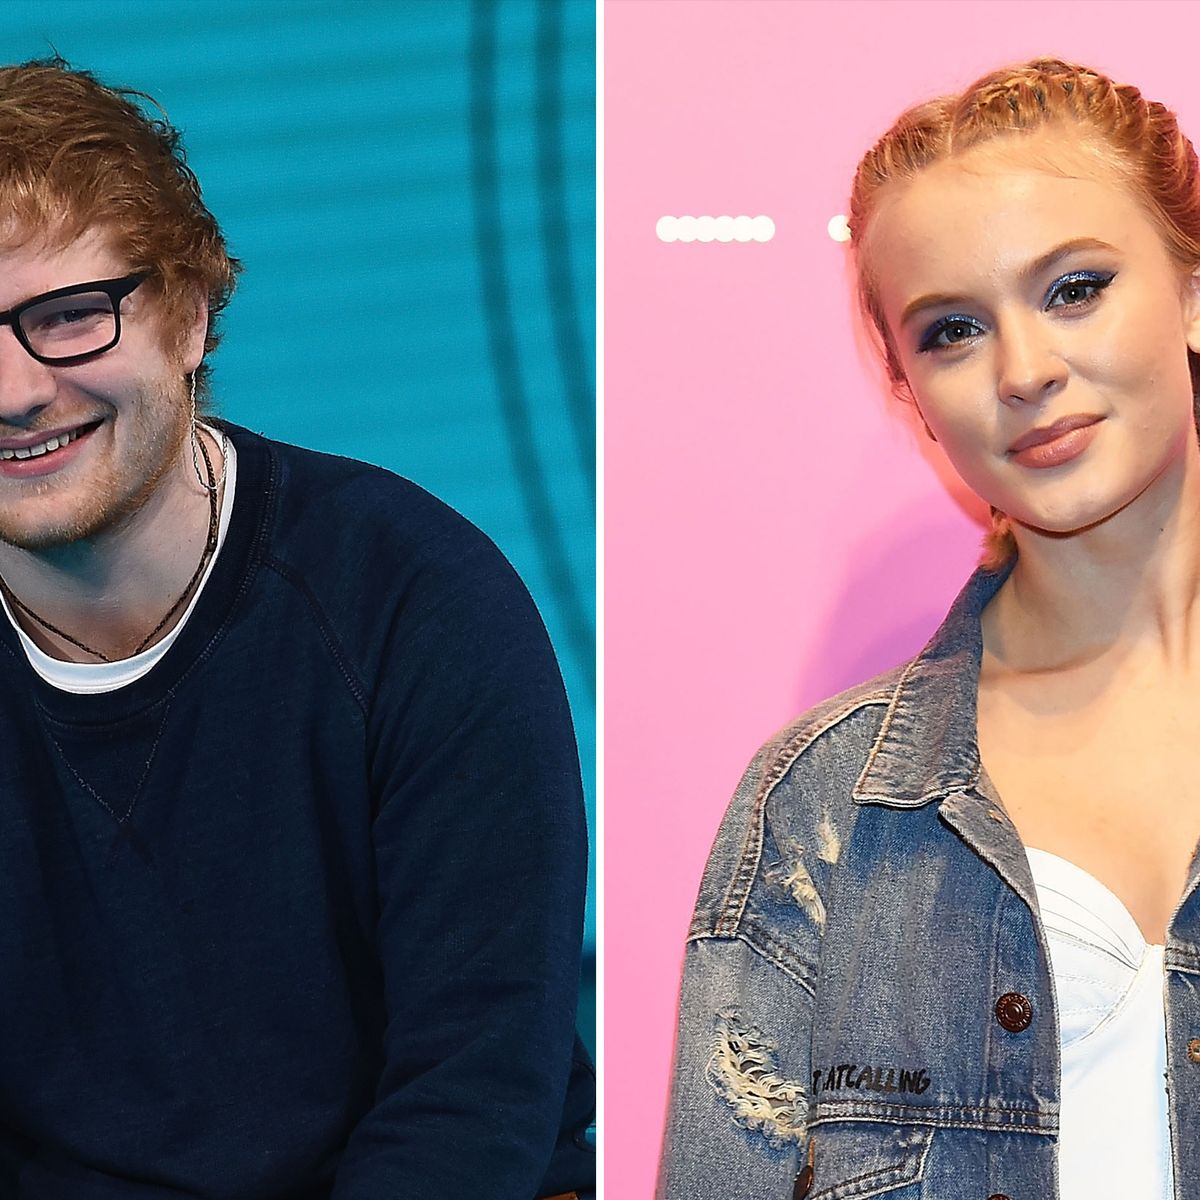 Zara Larsson Supporting Ed Sheeran On 2019 European Tour